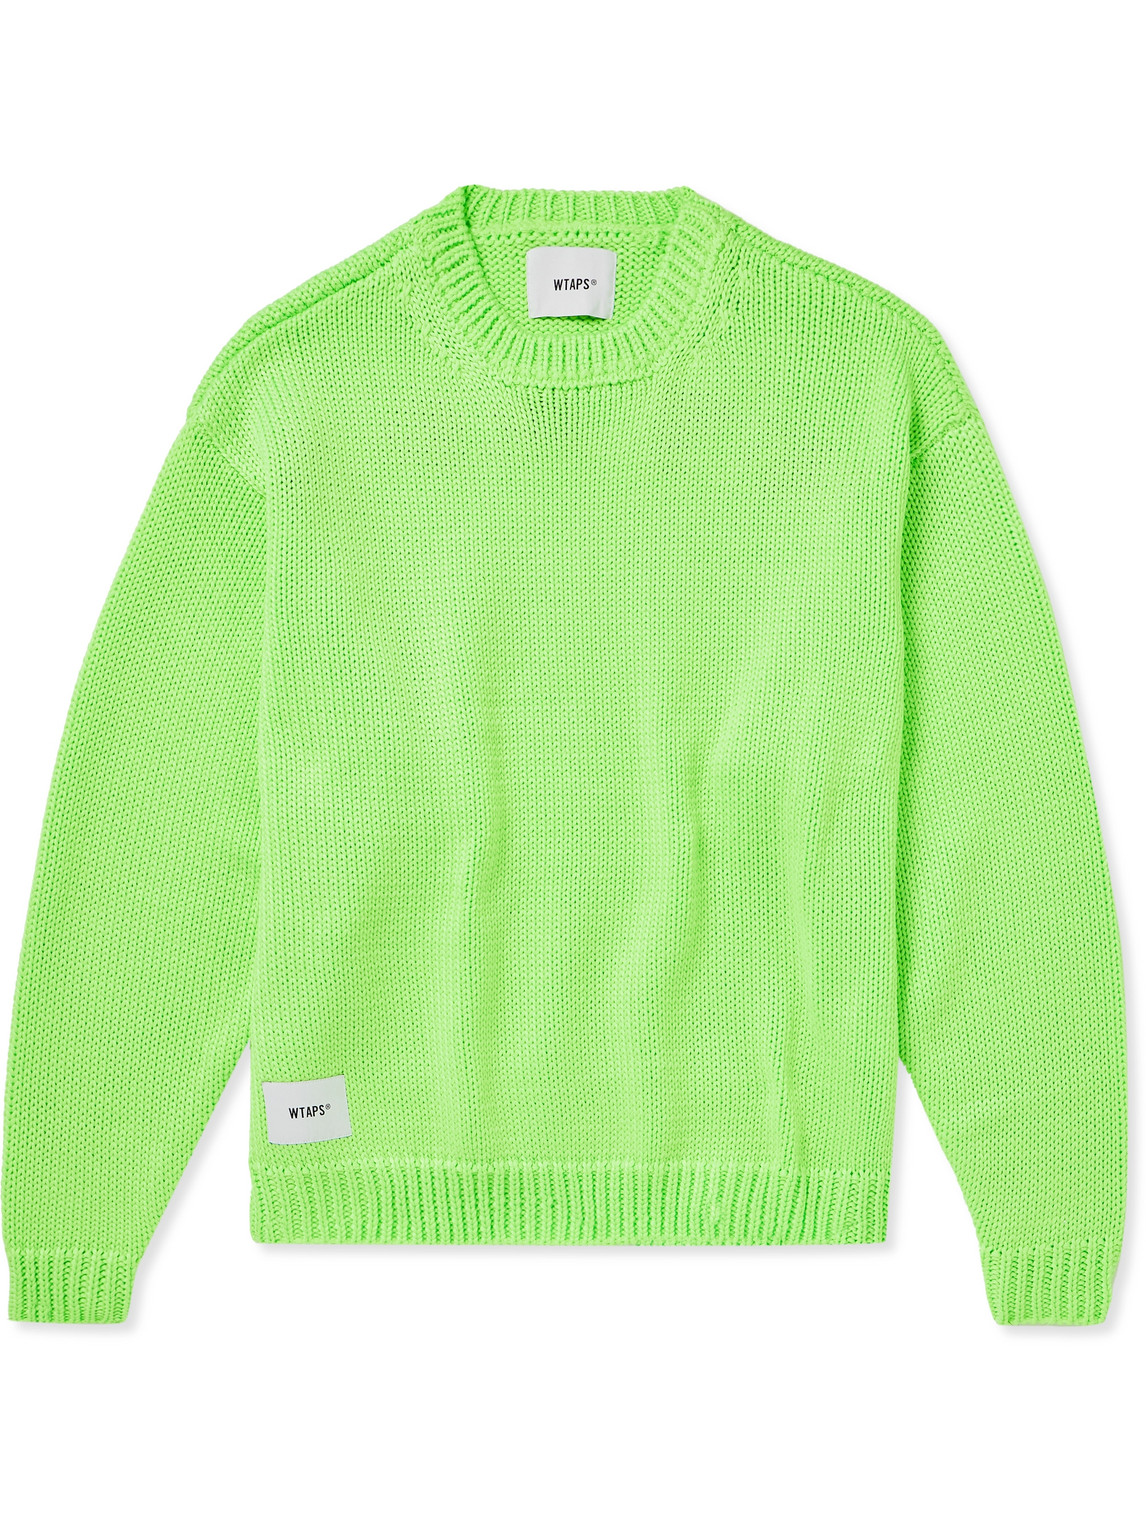 Wtaps Crewneck Sweater 01 In Green